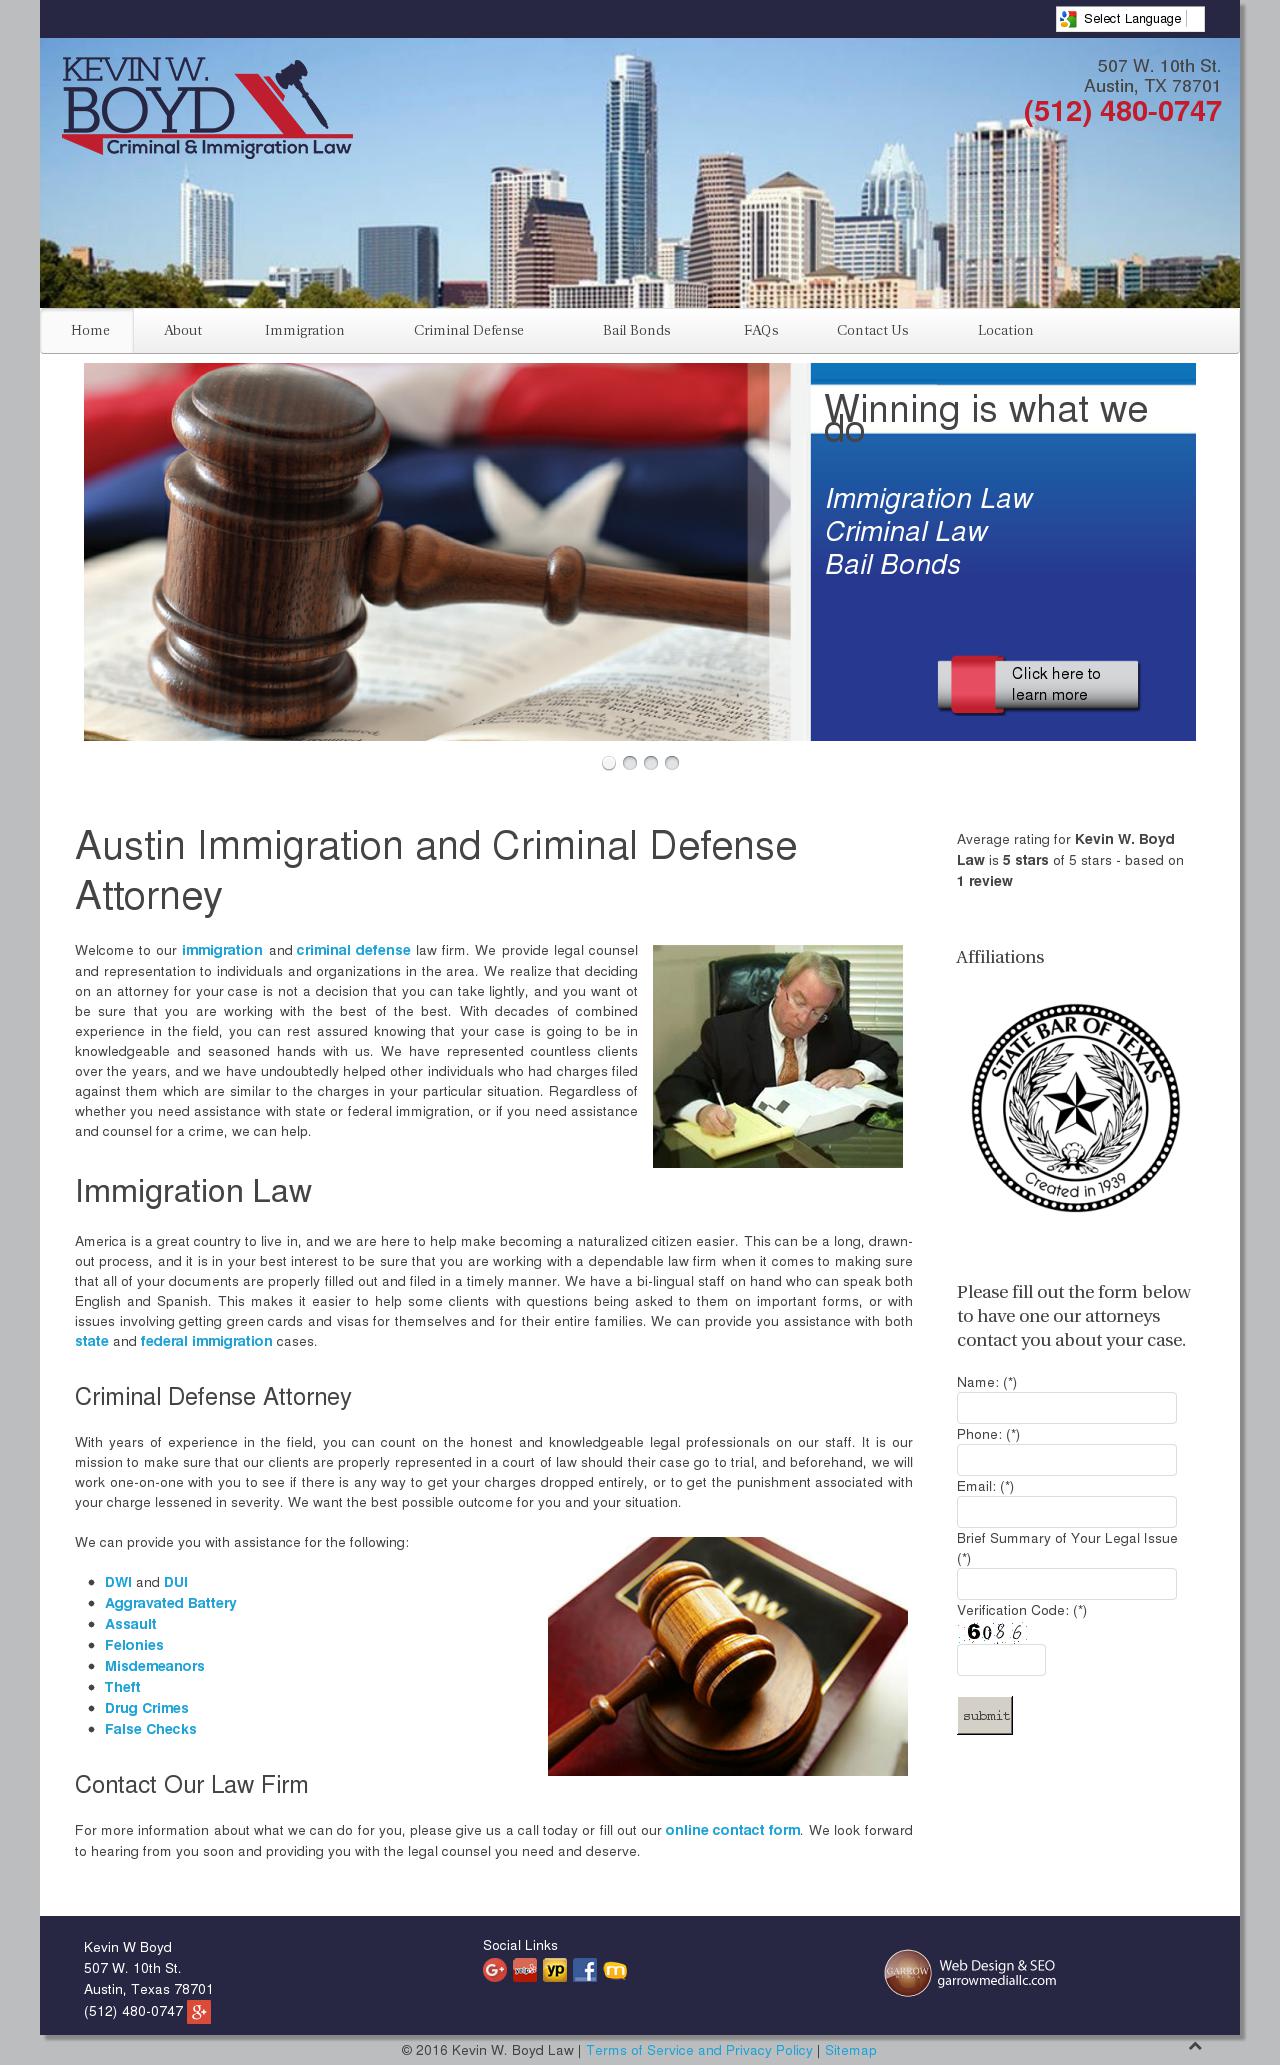 Kevin W. Boyd Attorney at Law - Austin TX Lawyers